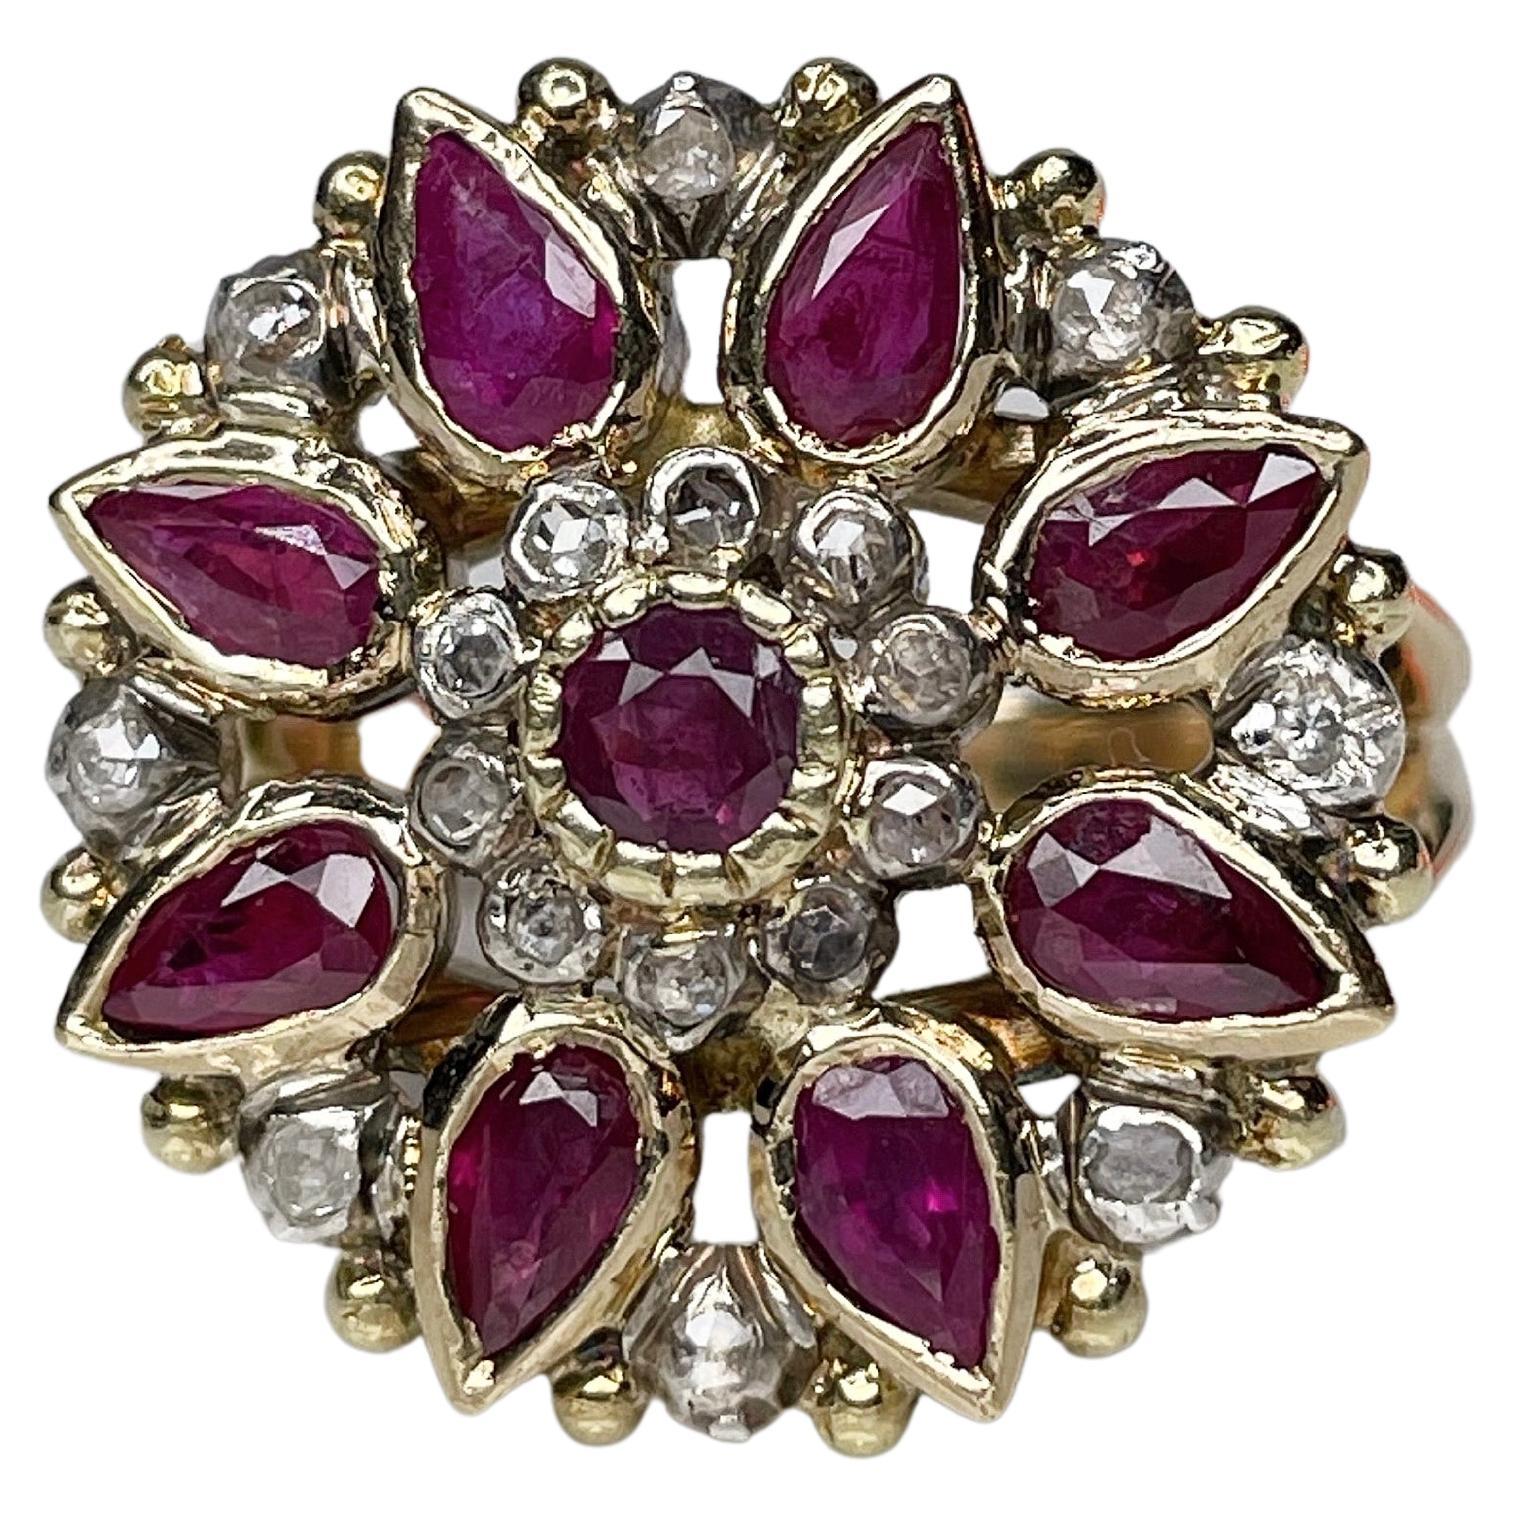 Victorian 18 Karat Gold 2.14 Carat Ruby 0.27 Carat Rose Cut Diamond Ring